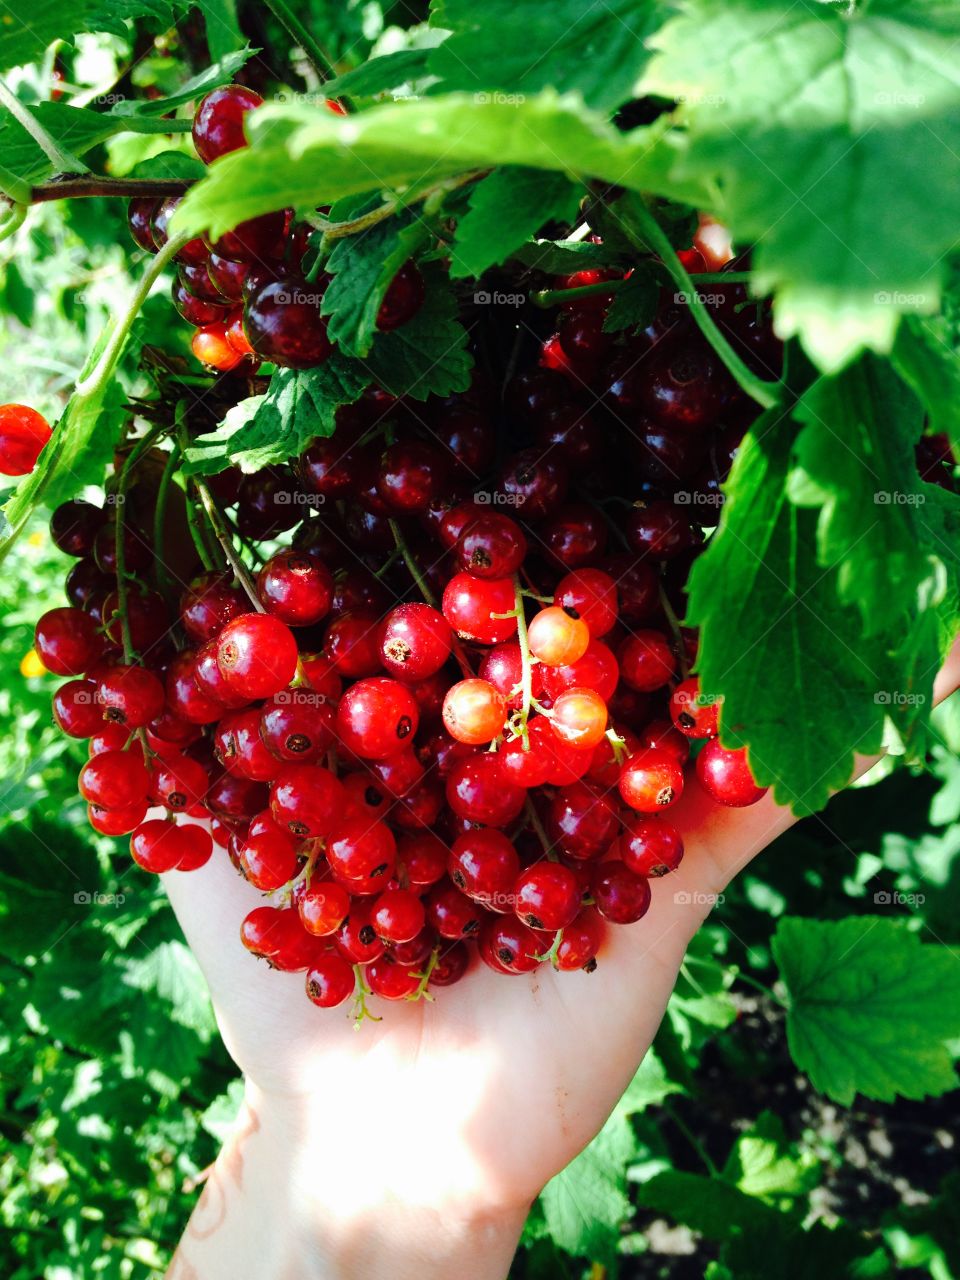 Berrys. Berrys in my garden